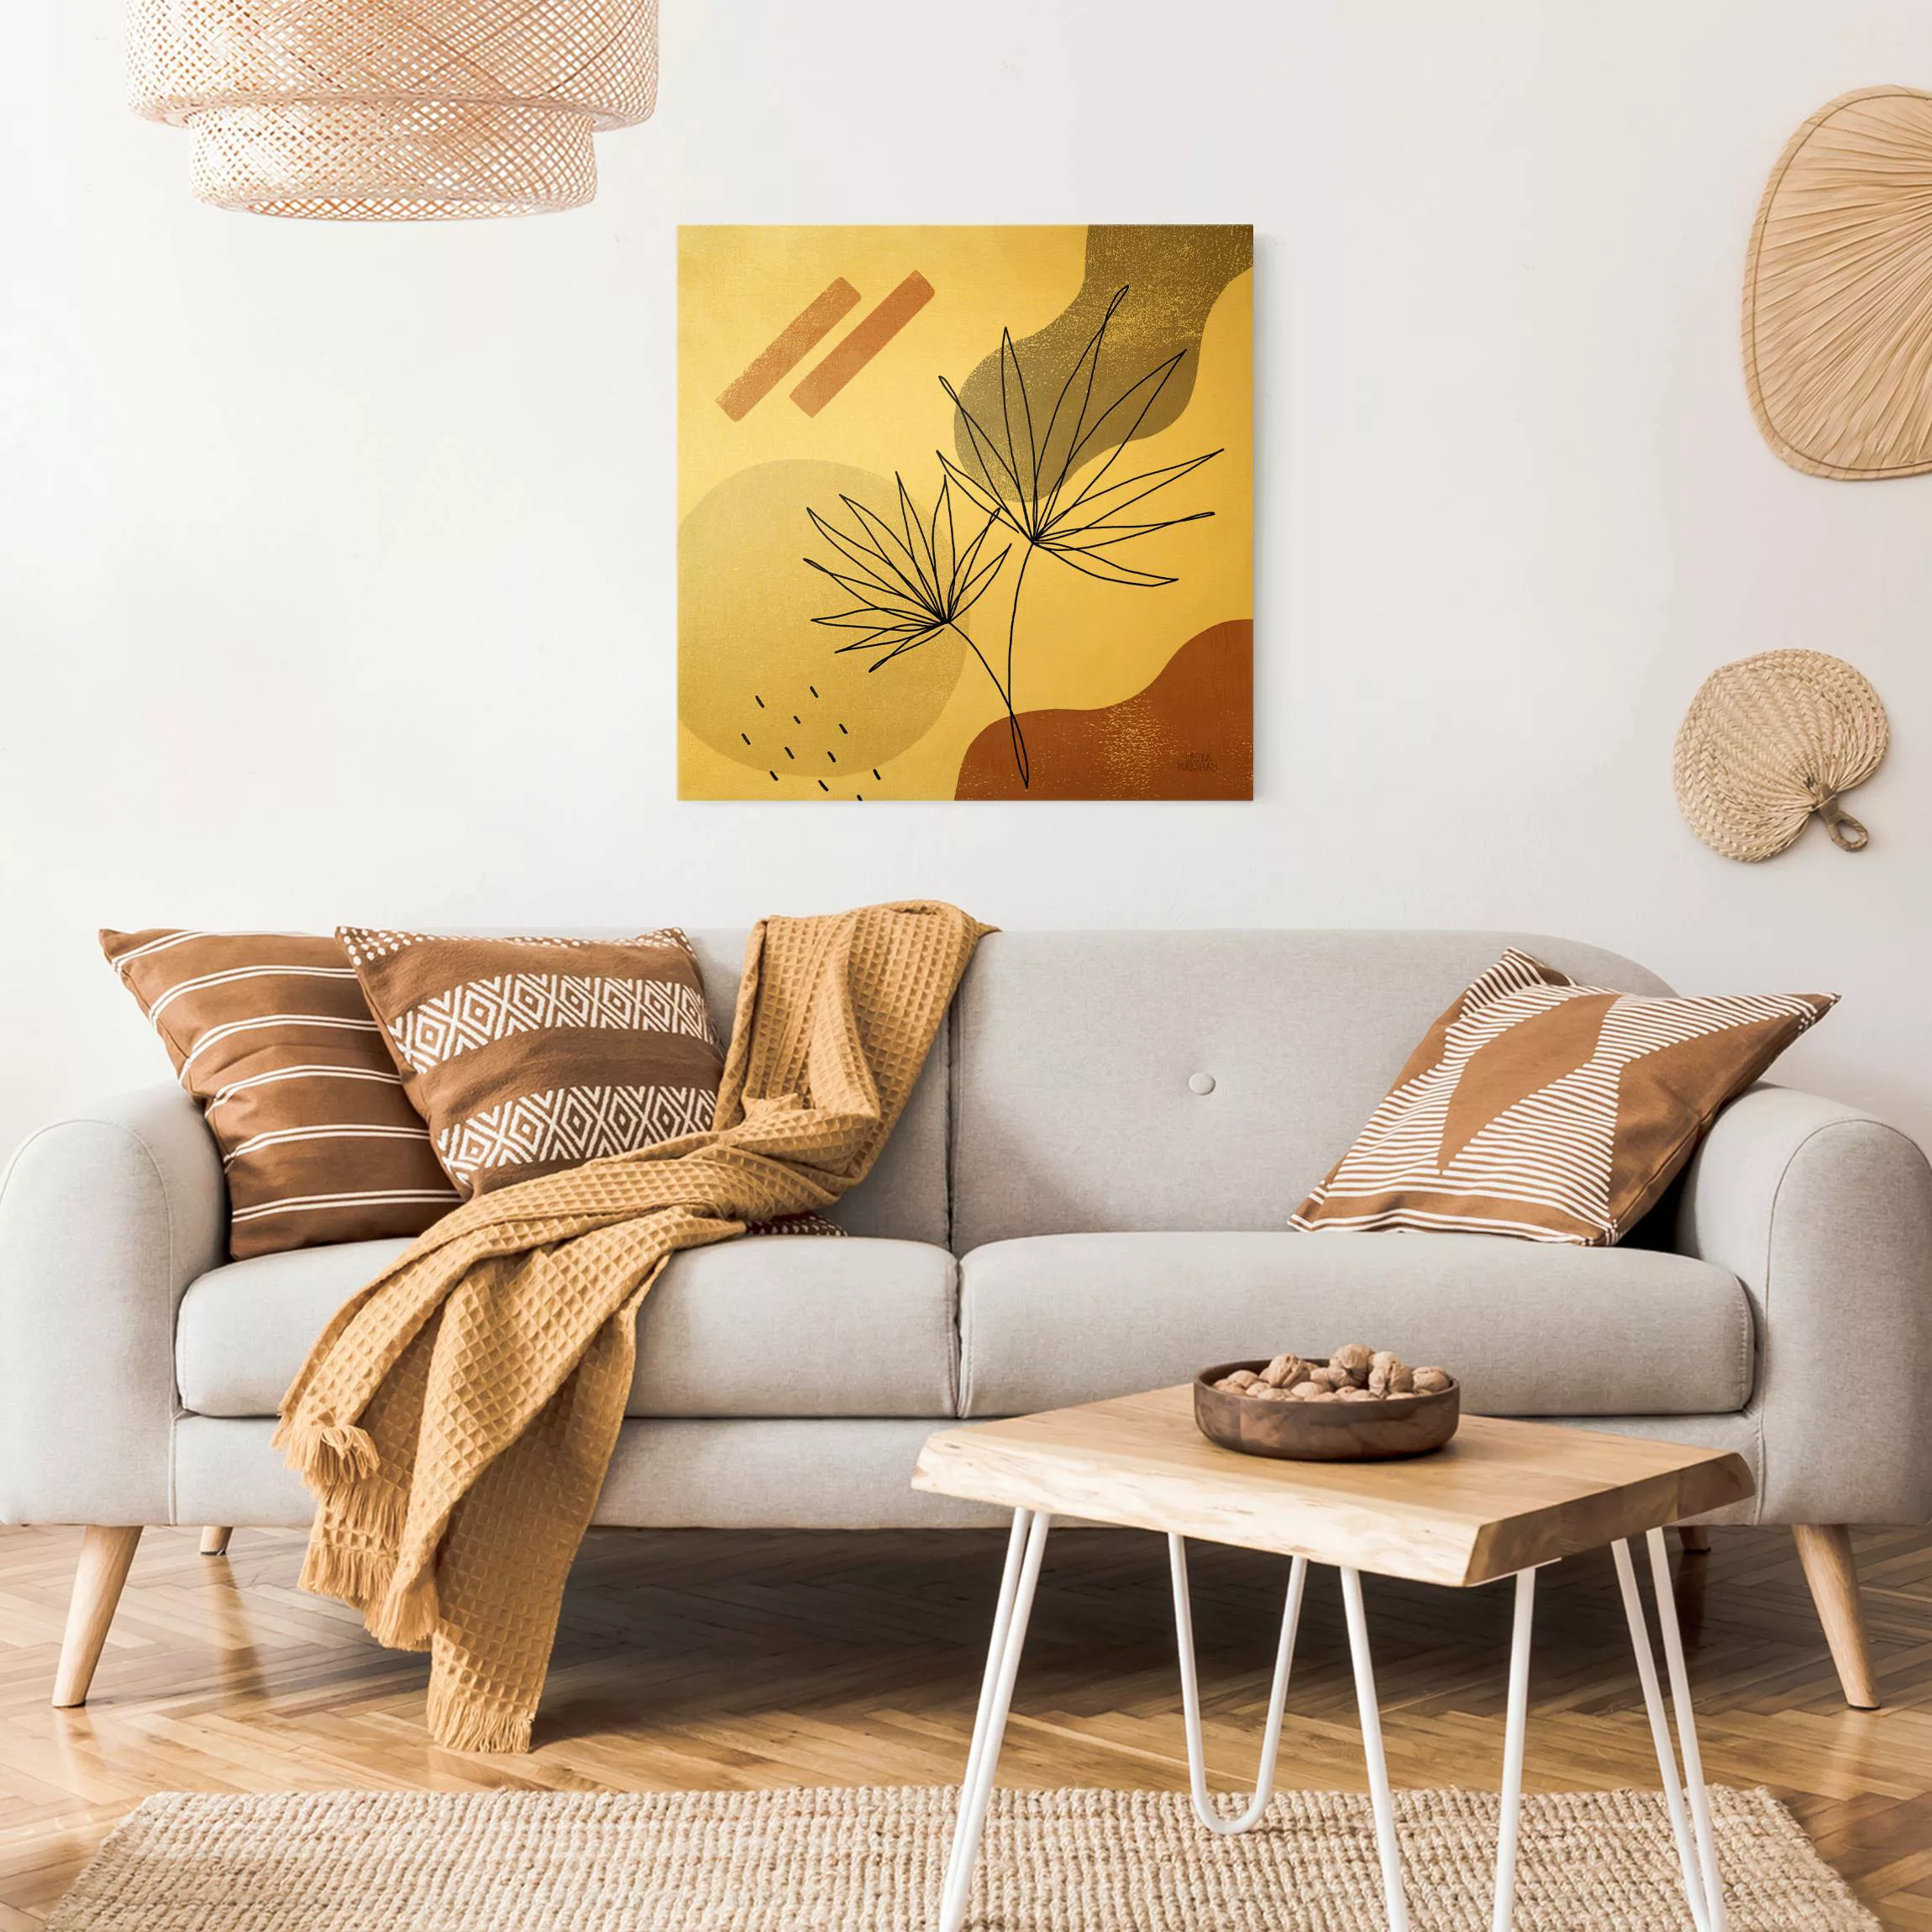 Leinwandbild Fächerpalme Lineart und Terracotta Farben günstig online kaufen